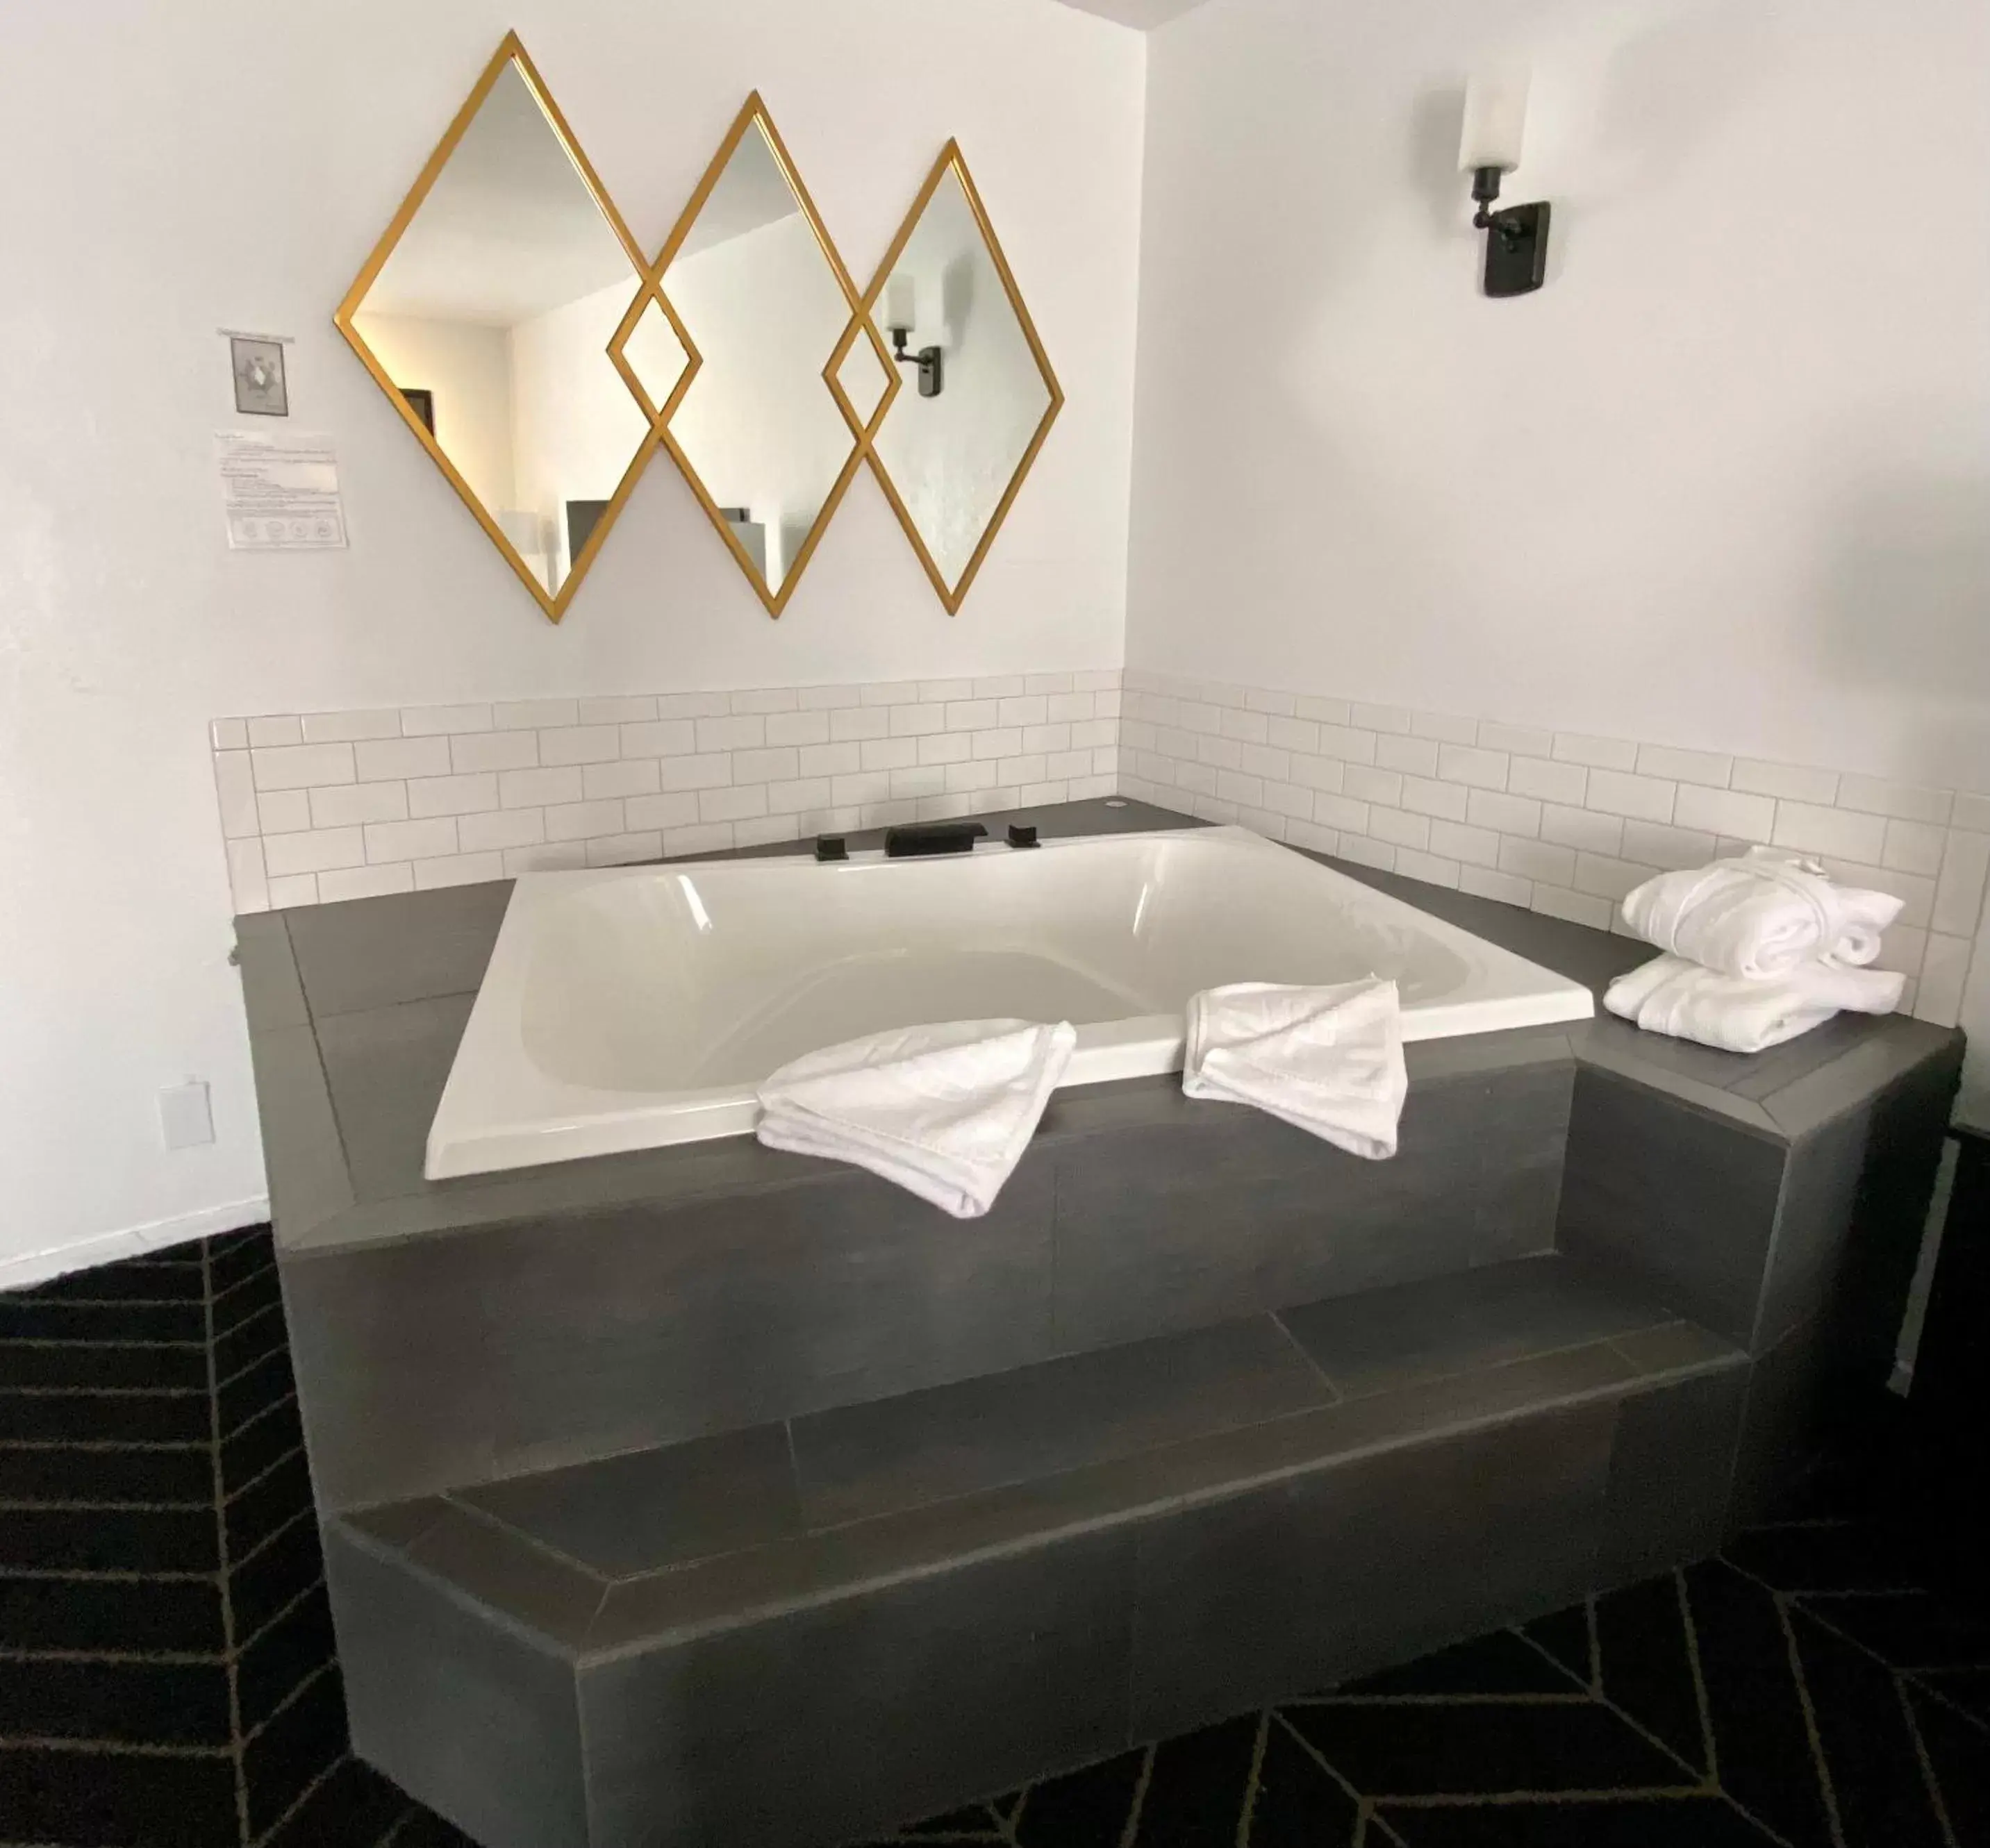 Hot Tub, Bathroom in Masterpiece Hotel